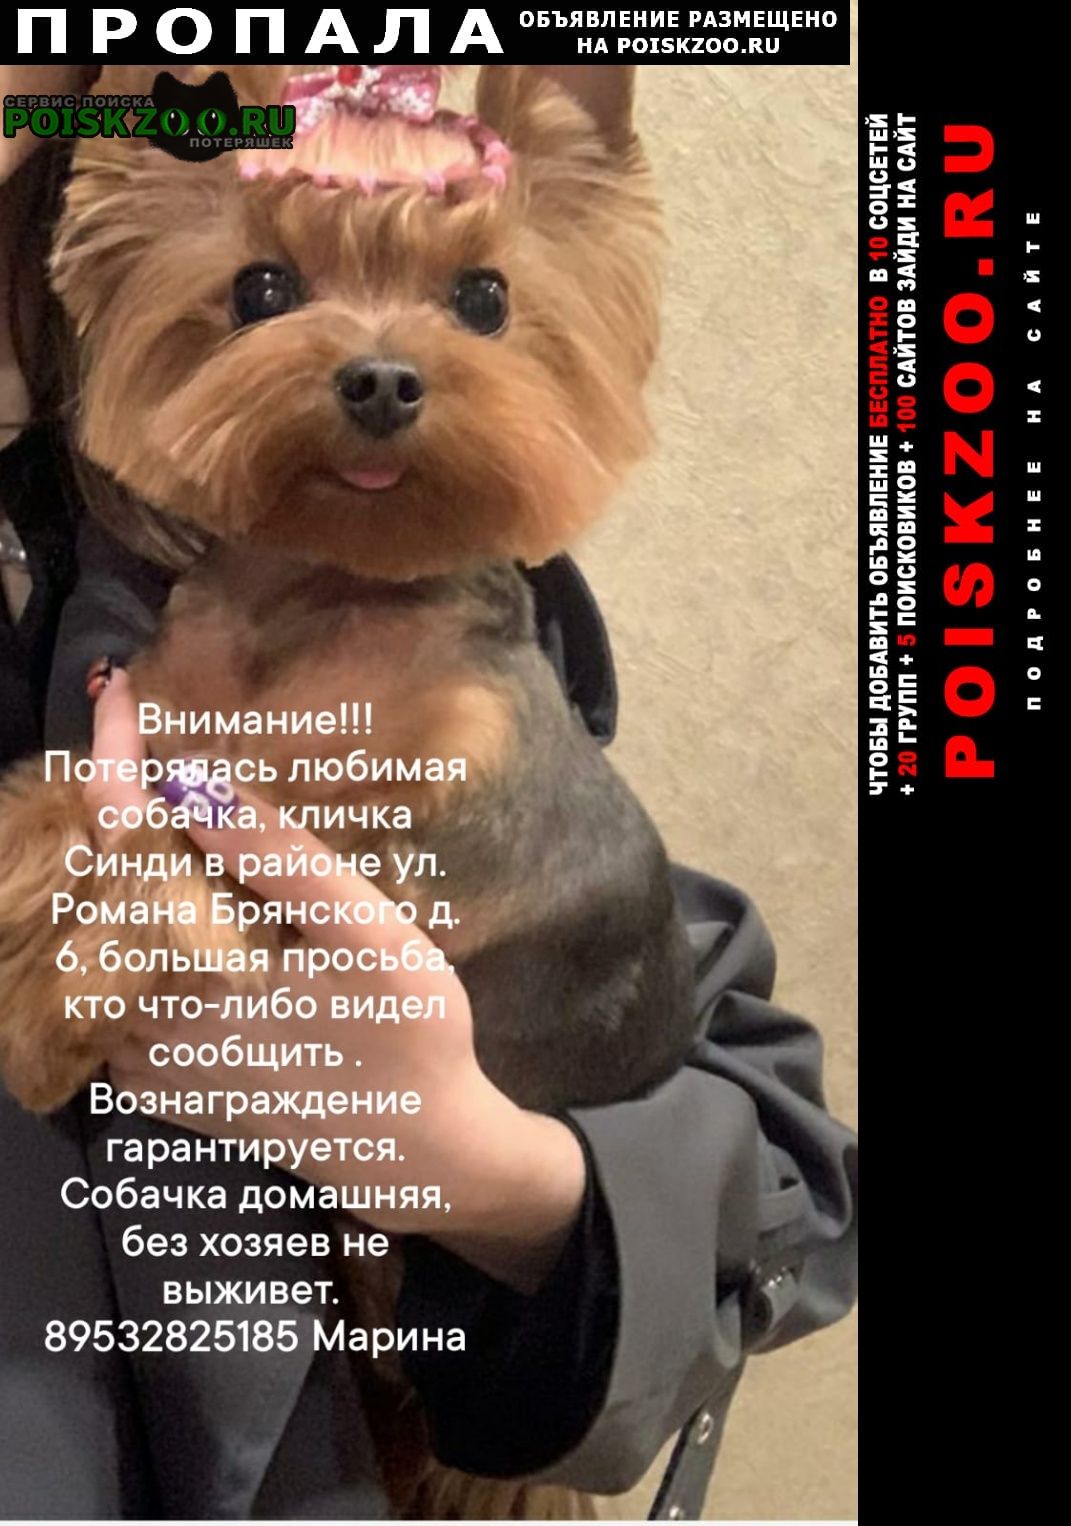 Брянск Пропала собака помогите пожалуйста найти члена семьи